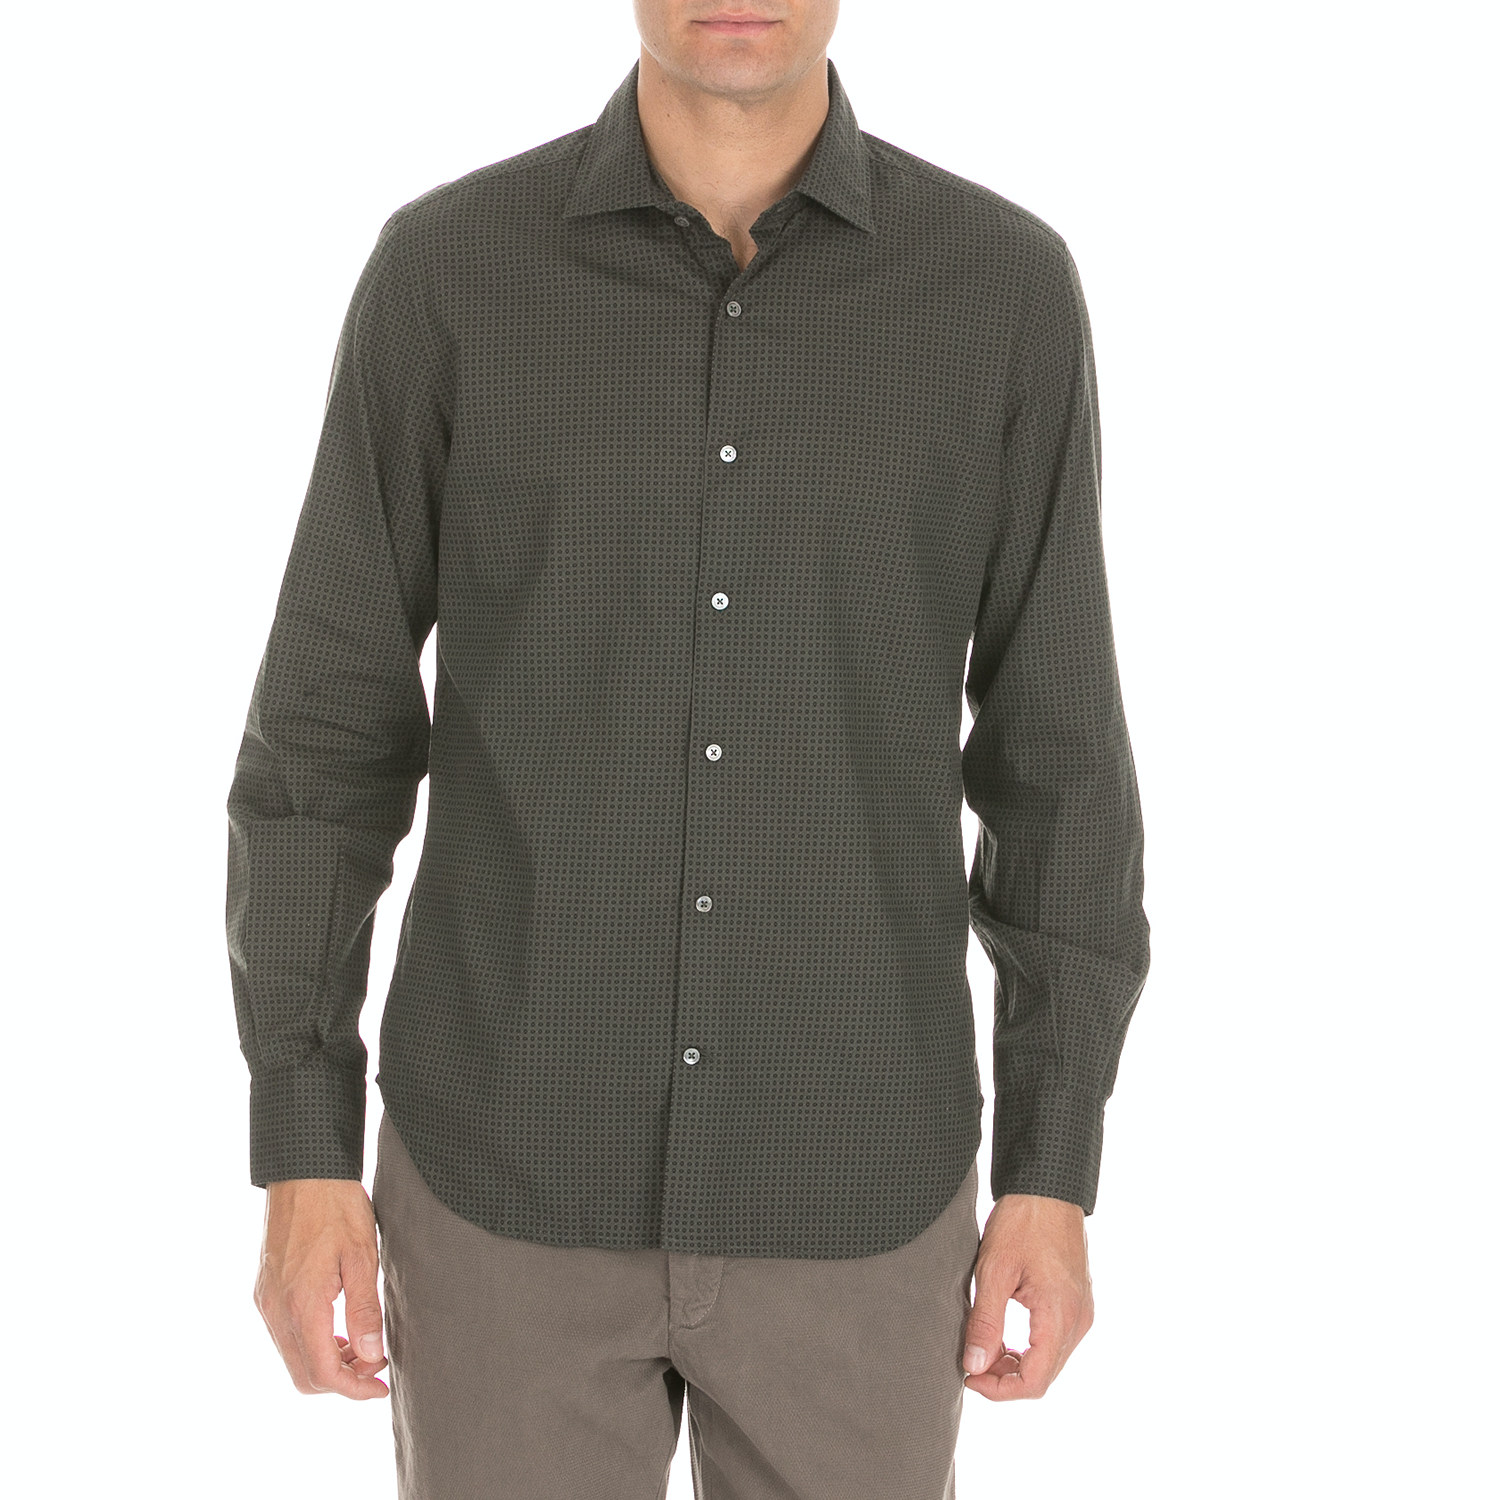 Ανδρικά/Ρούχα/Πουκάμισα/Μακρυμάνικα BROOKSFIELD - Ανδρικό πουκάμισο BROOKSFIELD χακί μαύρο